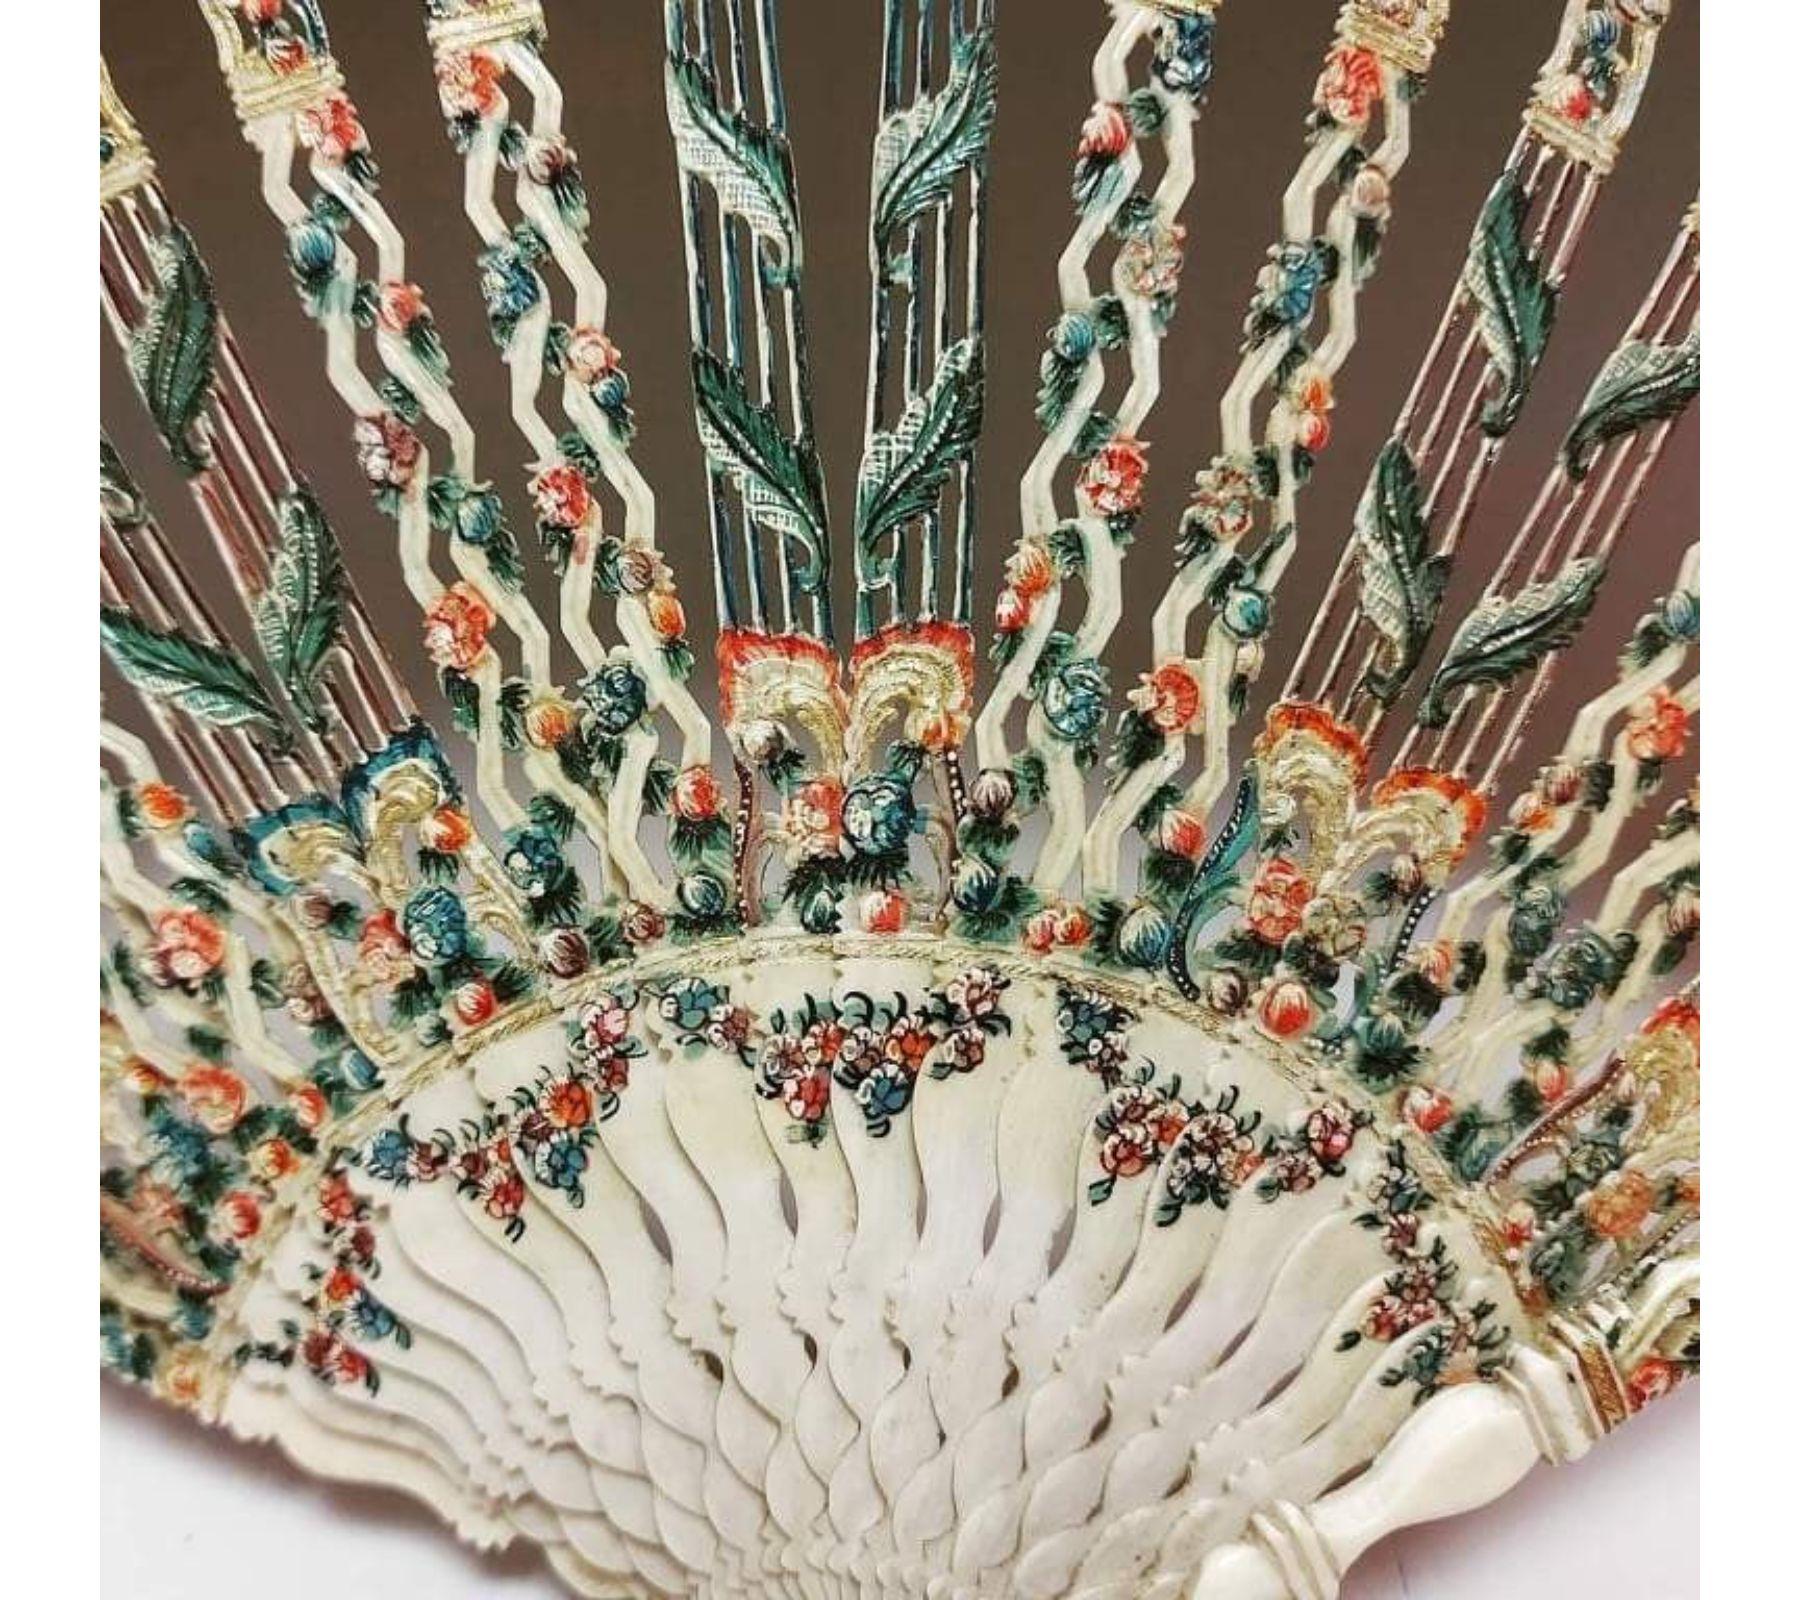 Éventail époque XVIII e. Rare monture en zigzag et décors floraux. Vernis Martin sur ivoire. Feuille peinte en vélin figurant une rare scène de jeu de cerf volante.